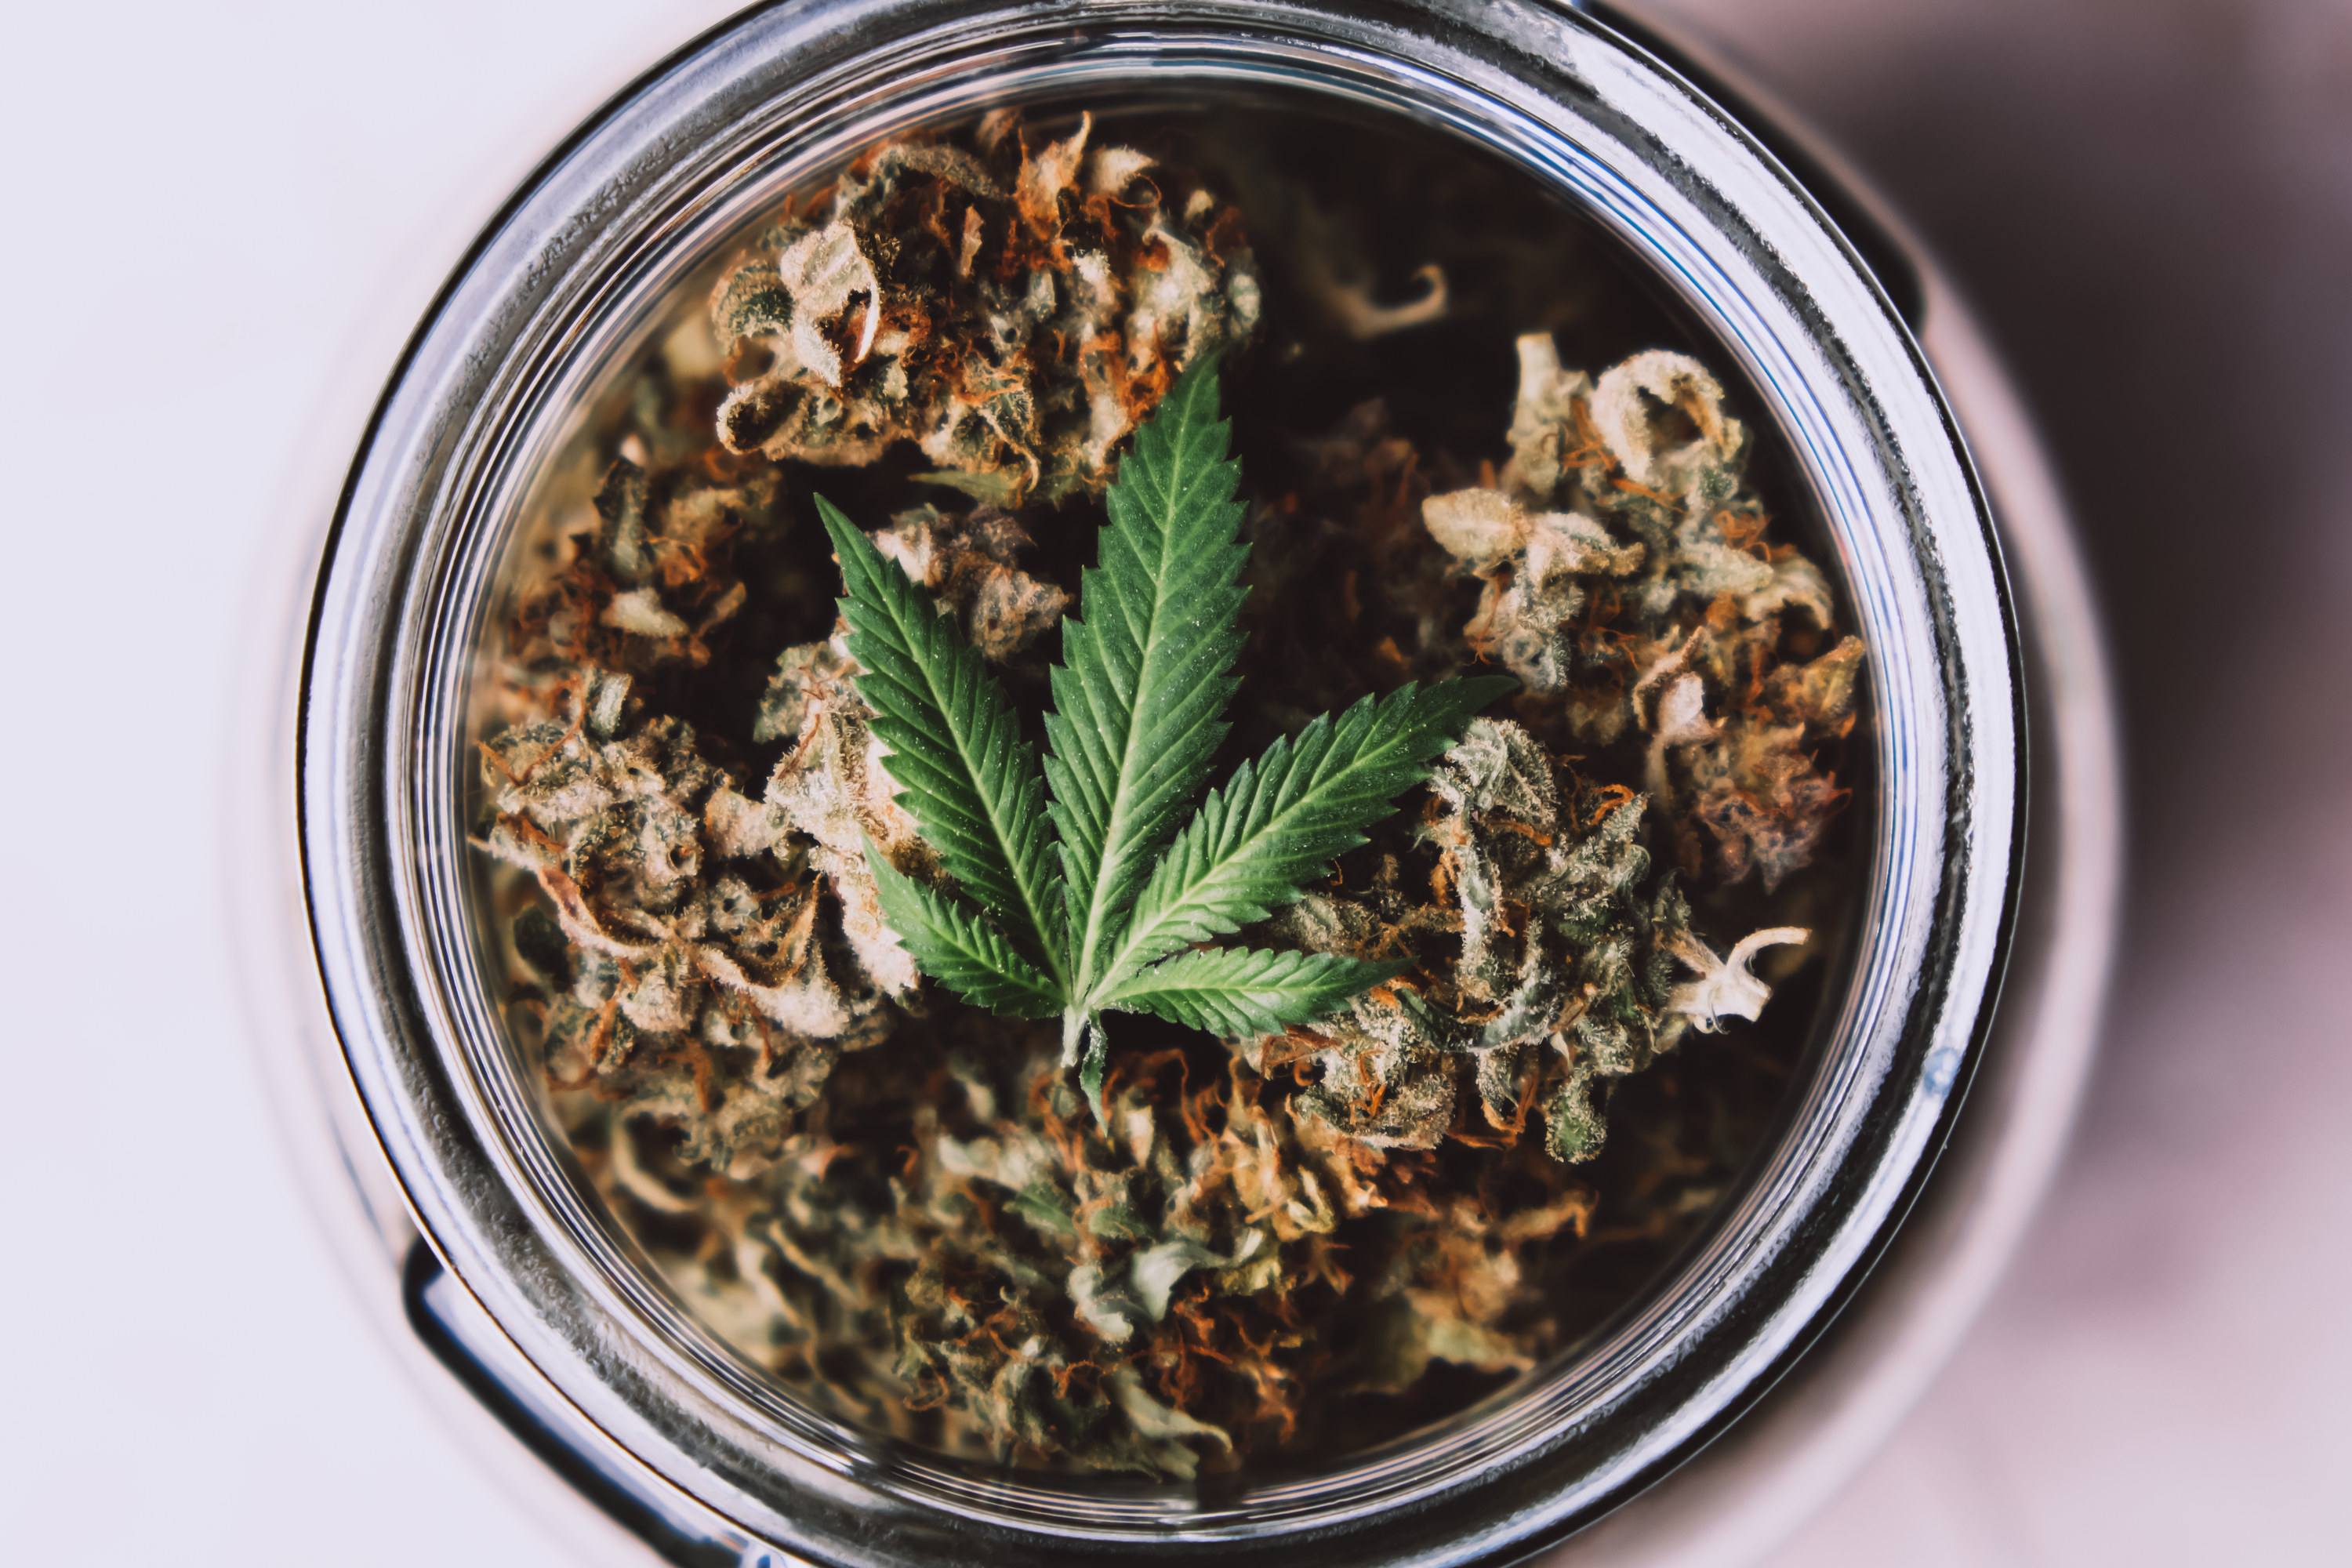 jar of marijuana with leaf on top